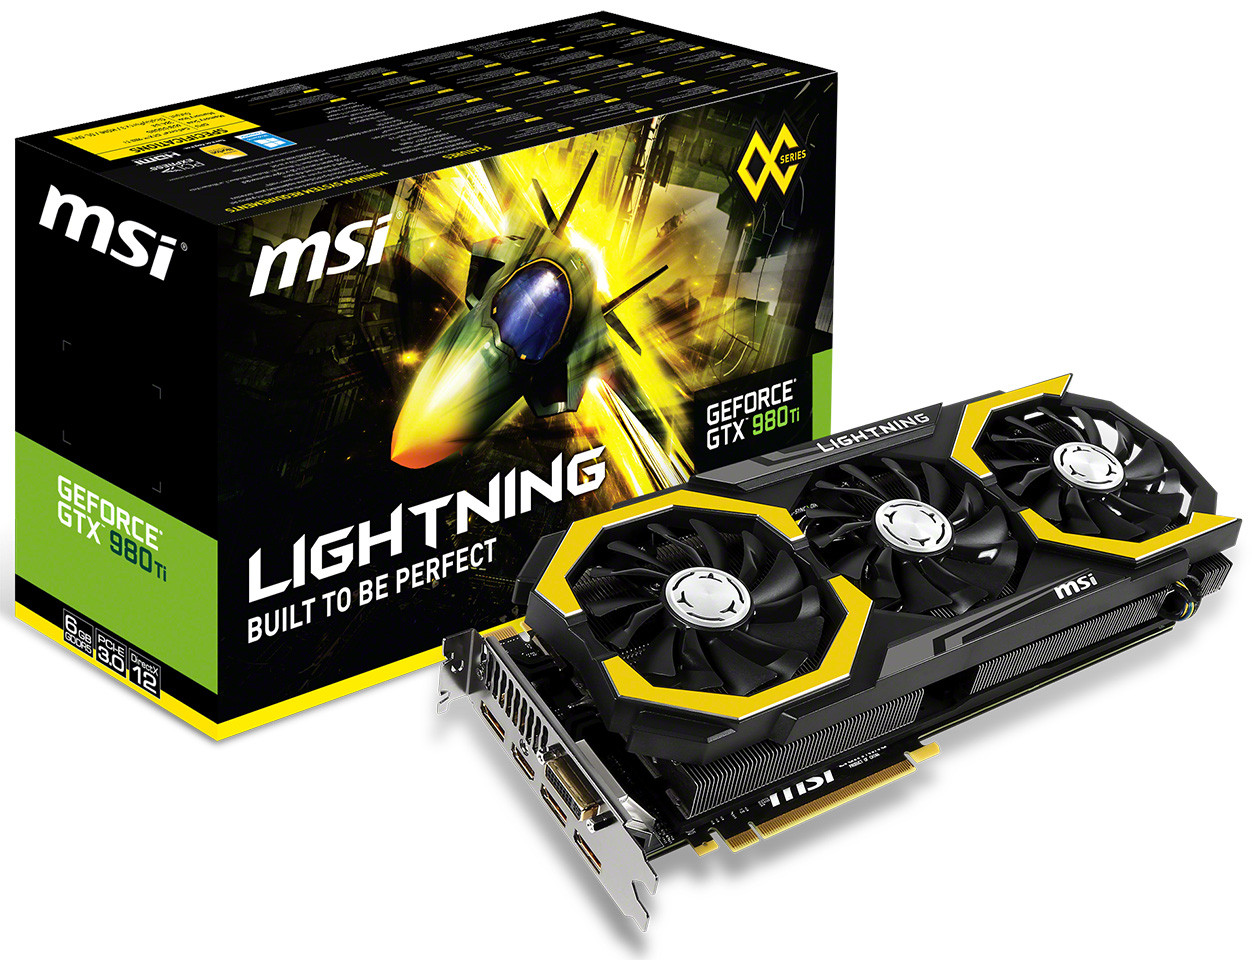 Immagine pubblicata in relazione al seguente contenuto: Overclocking: MSI annuncia la video card GeForce GTX 980Ti Lightning | Nome immagine: news23014_MSI-GeForce-GTX-980Ti-Lightning_7.jpg